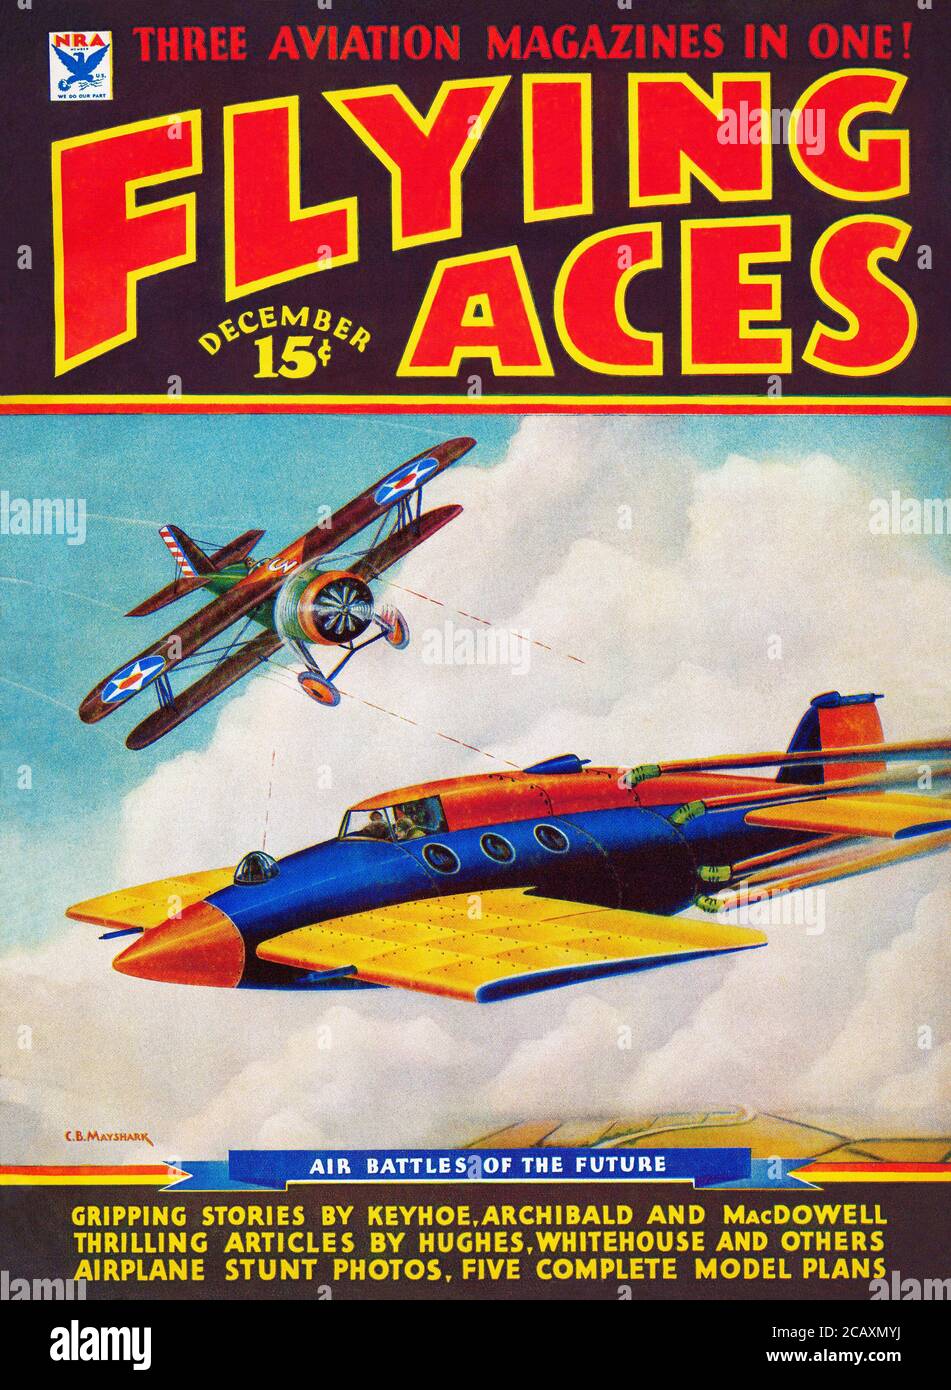 Vintage Frontcover des Flying Aces Magazins für Dezember 1934, illustriert von C.B. Mayshark. Stockfoto